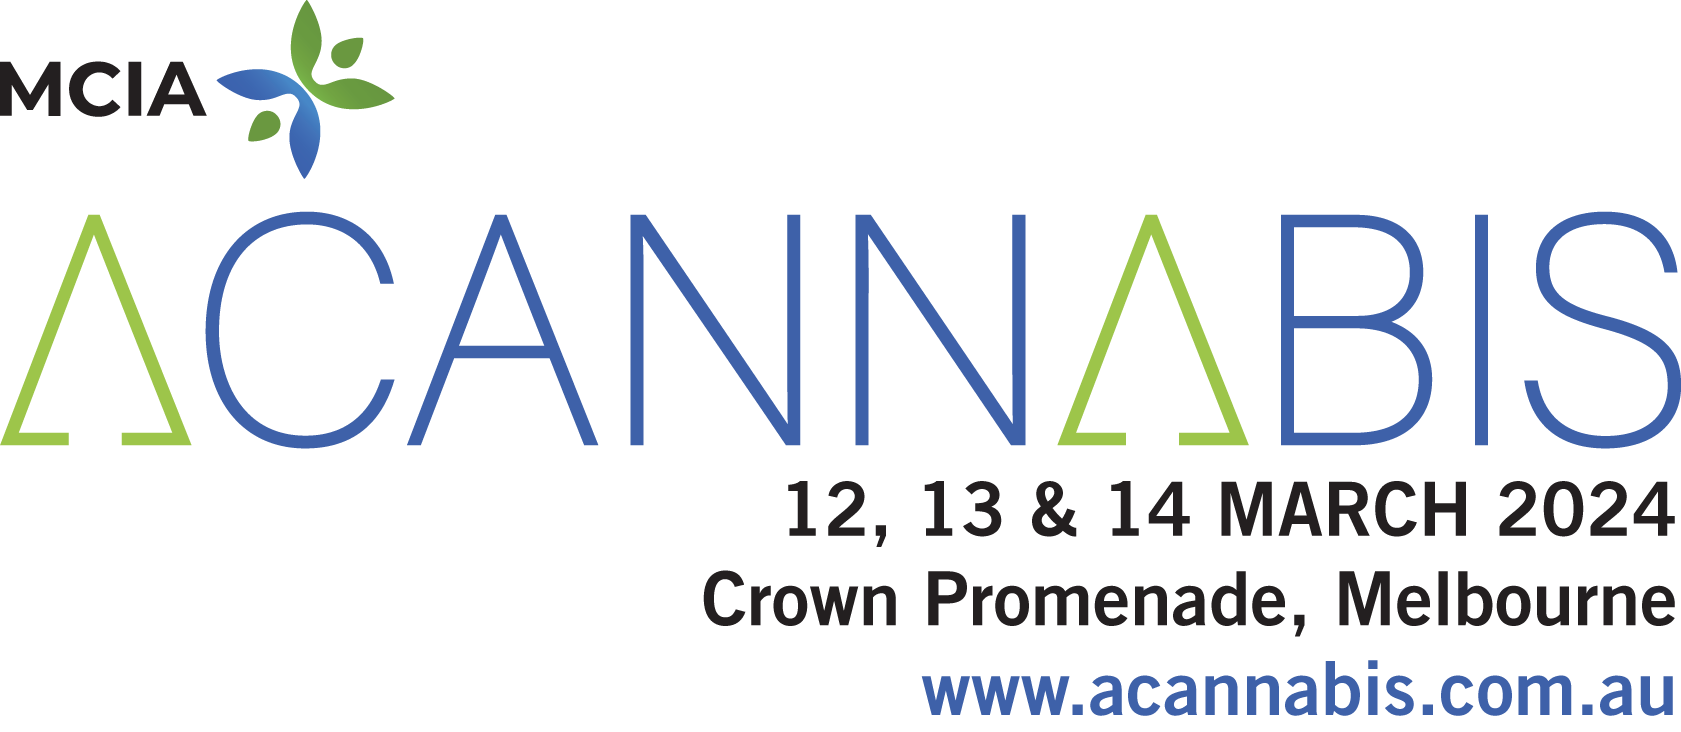 MCIA presents ACannabis 2024 and ACannabis 2024 Industry Dinner